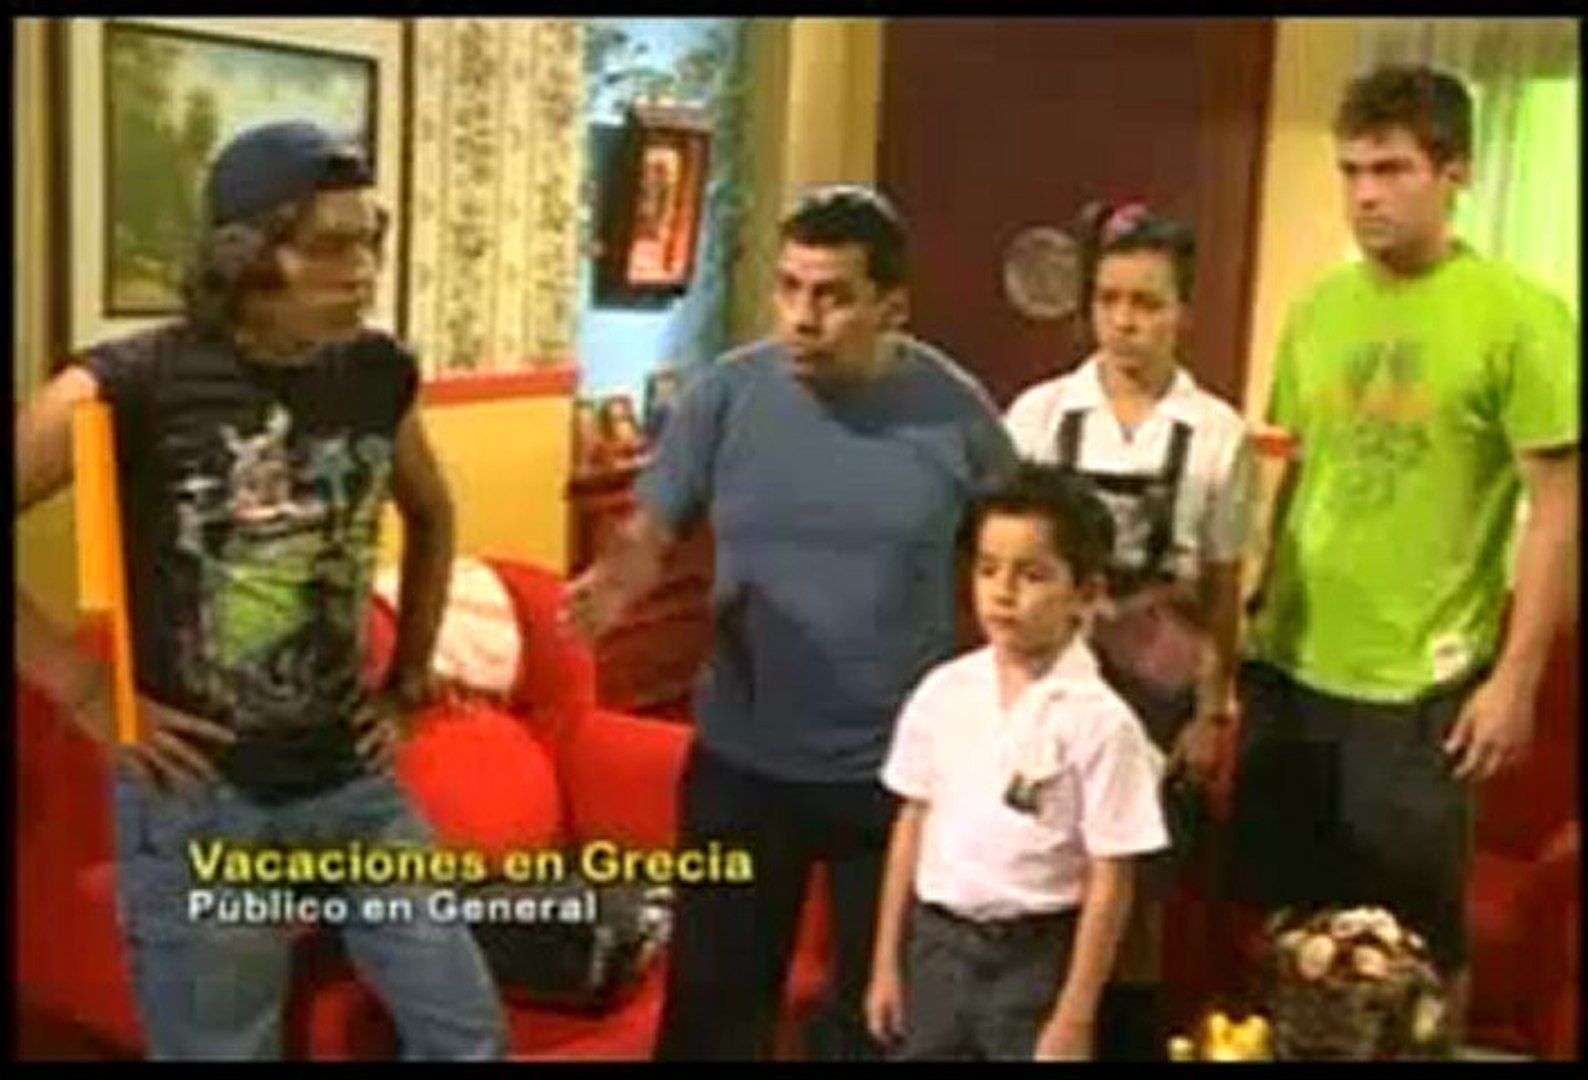 VACACIONES-EN-GRECIA 02-05 - video